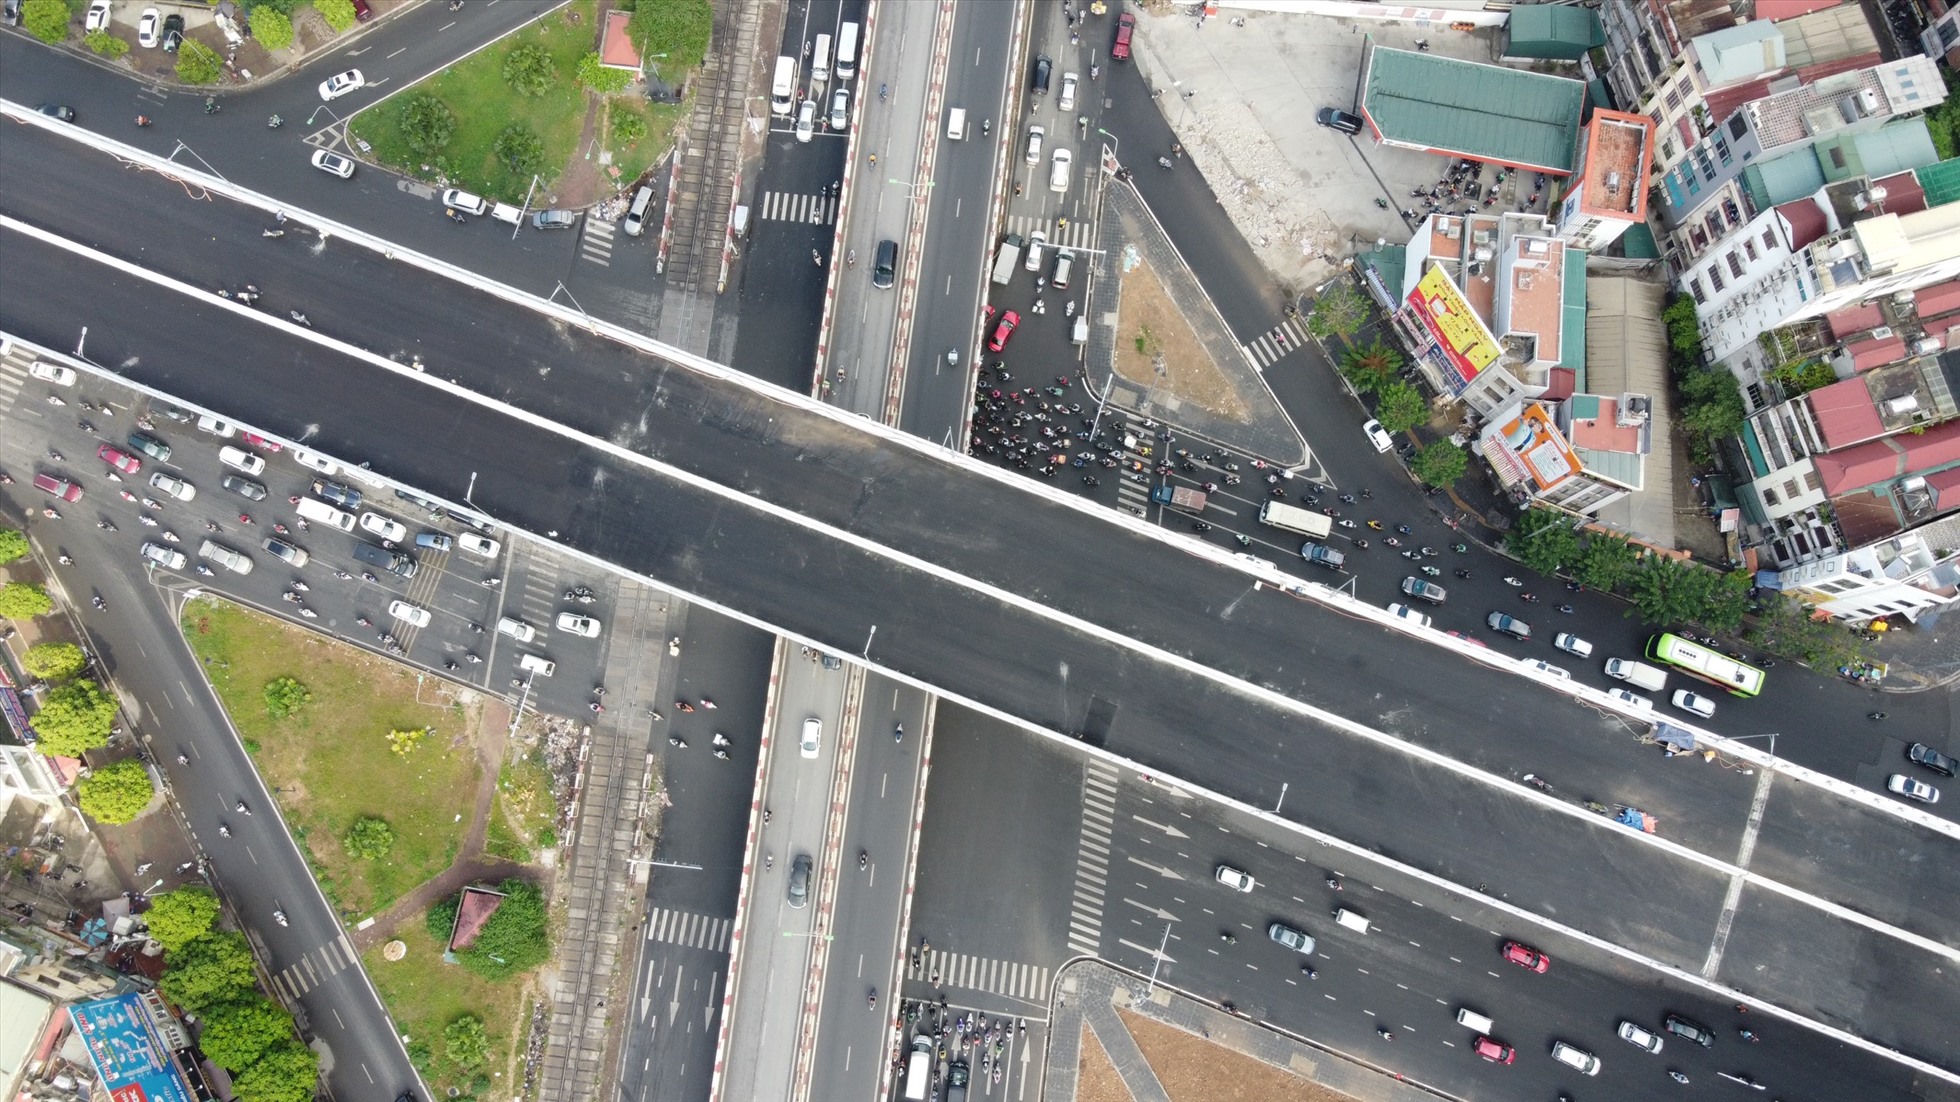 Đường Vành đai 2 khi đi vào hoạt động sẽ tăng cường lưu thông giữa hai bên bờ sông Hồng, từng bước hoàn chỉnh hạ tầng giao thông Thủ đô.